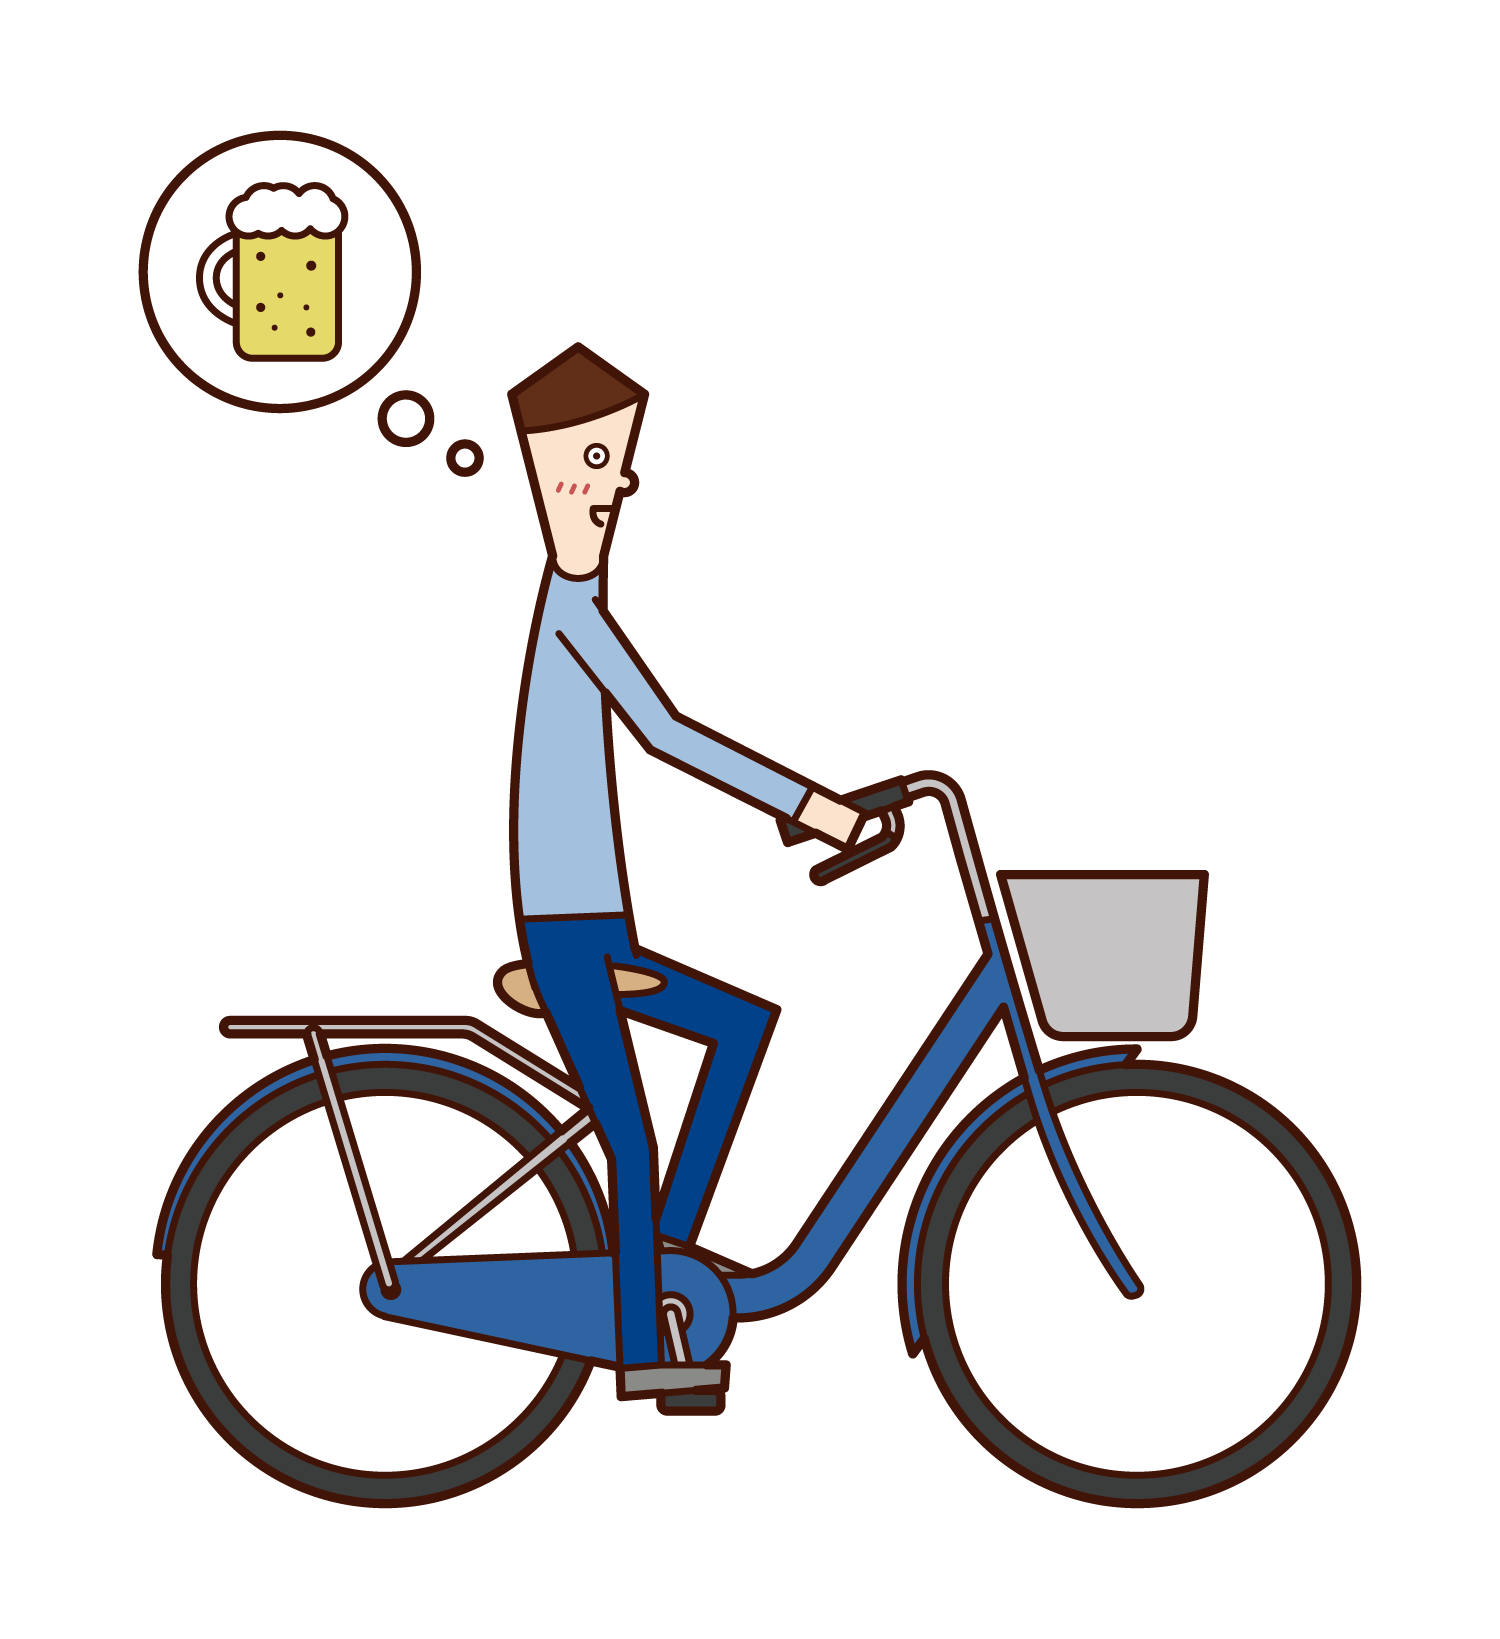 自転車で飲酒運転する人 男性 のイラスト フリーイラスト素材 Kukukeke ククケケ